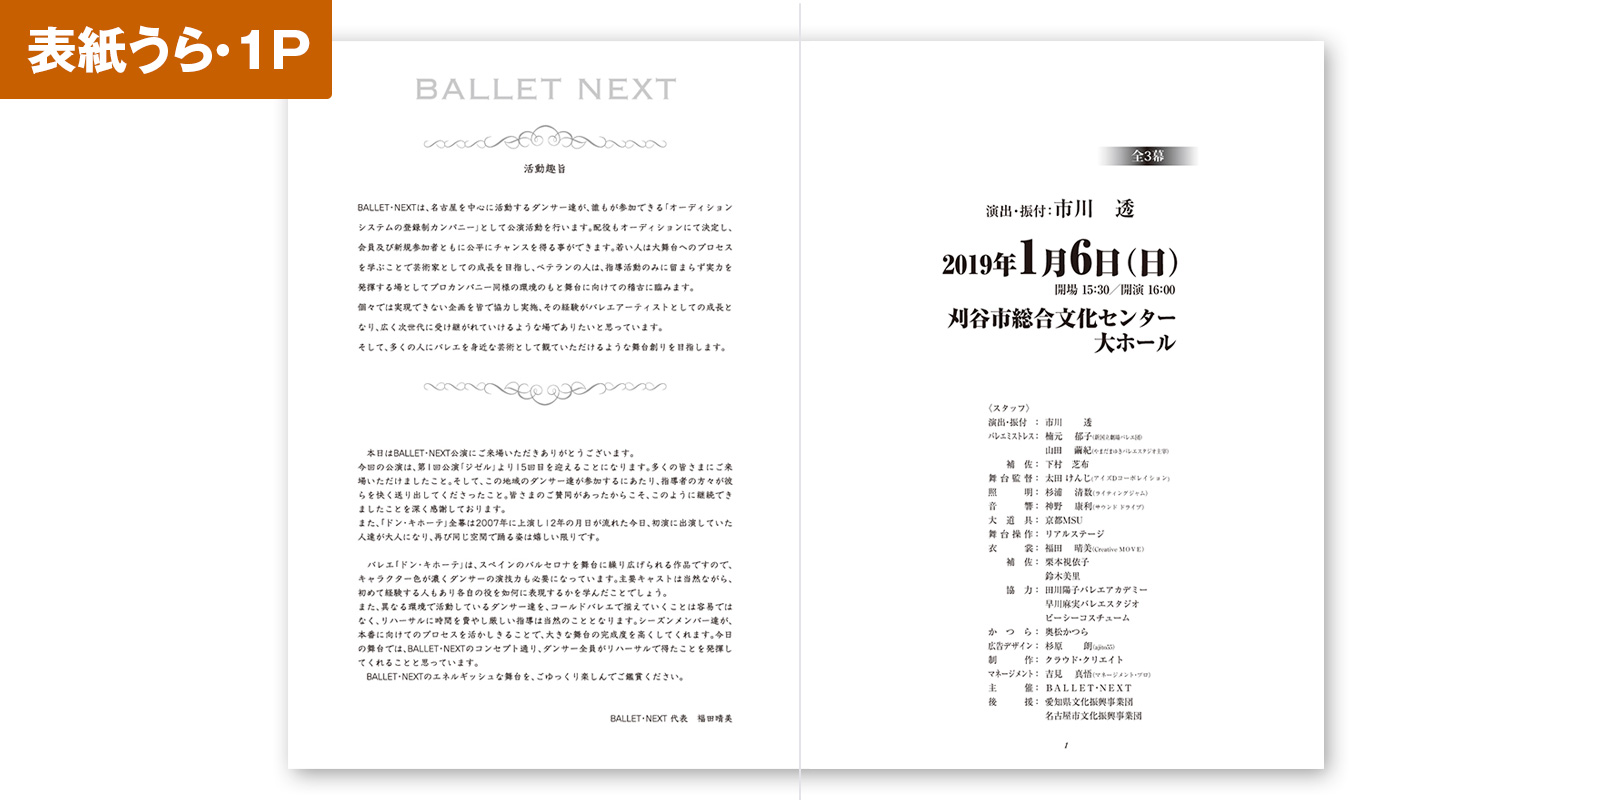 バレエ,ダンススクール発表会の公演プログラムの表紙の裏、1ページめ